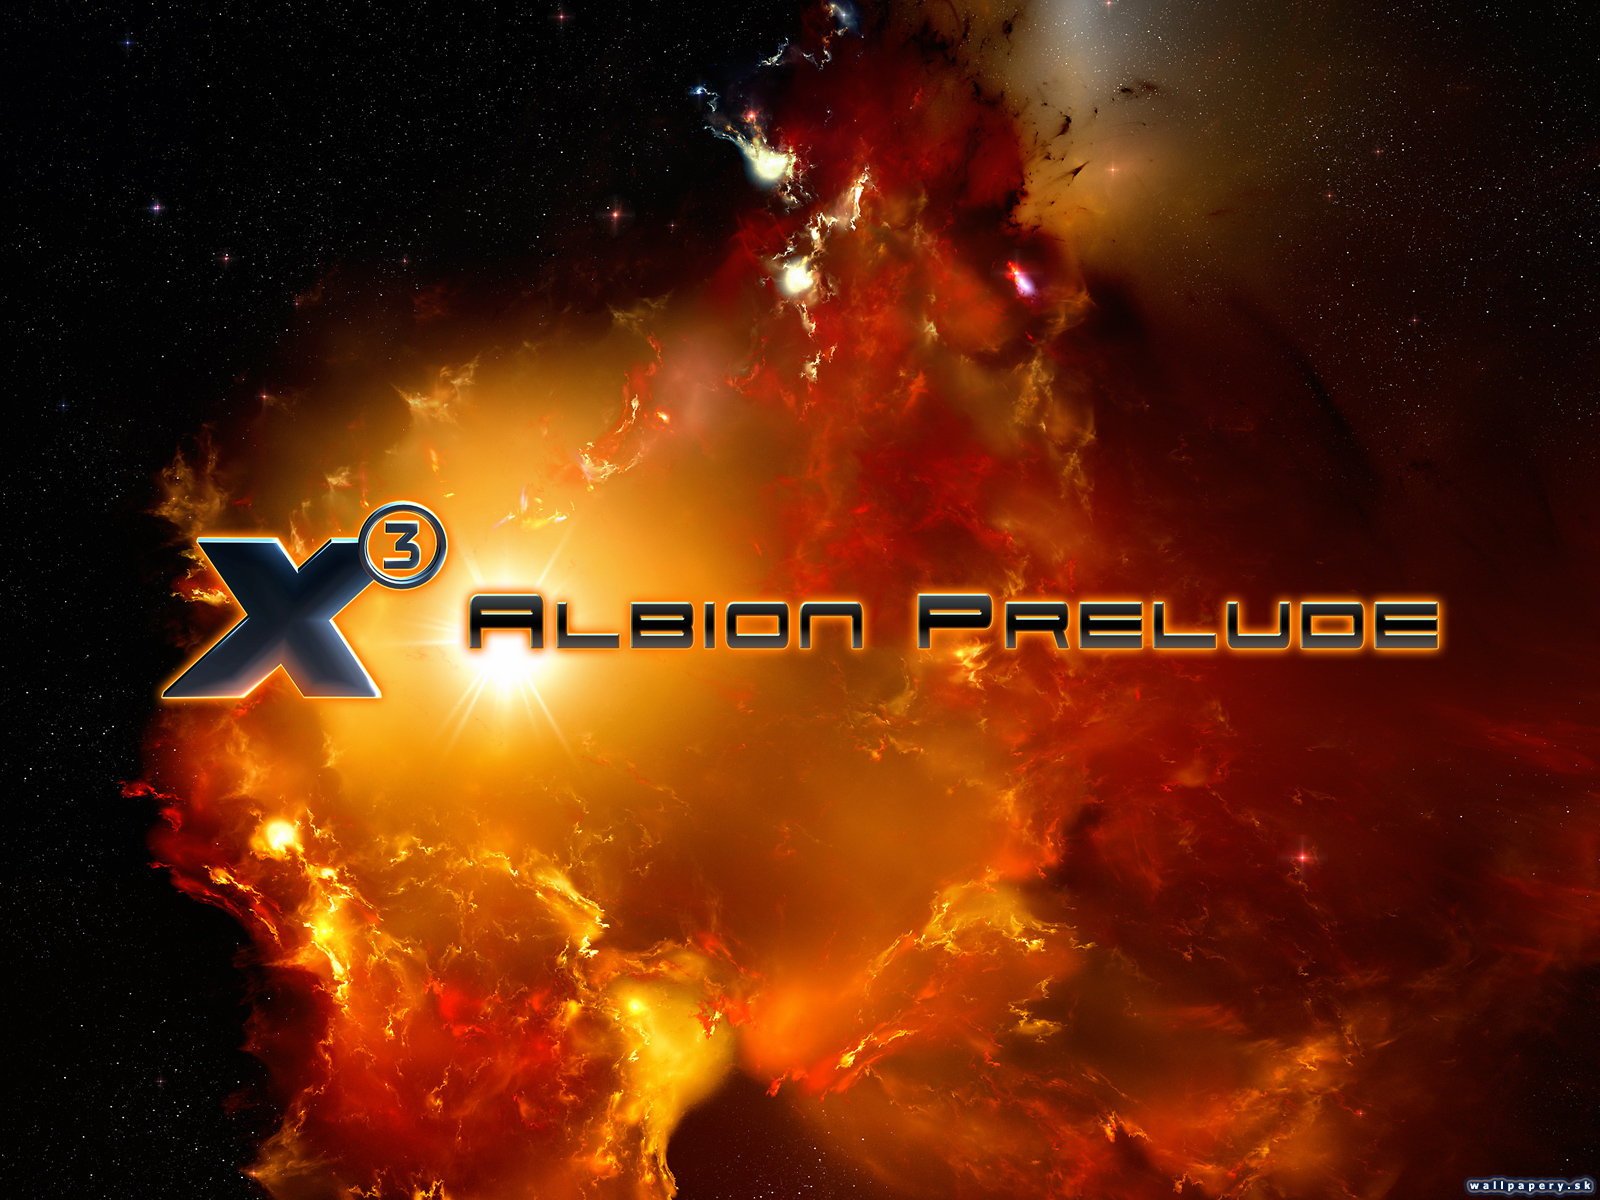 X3: Albion Prelude - wallpaper 3